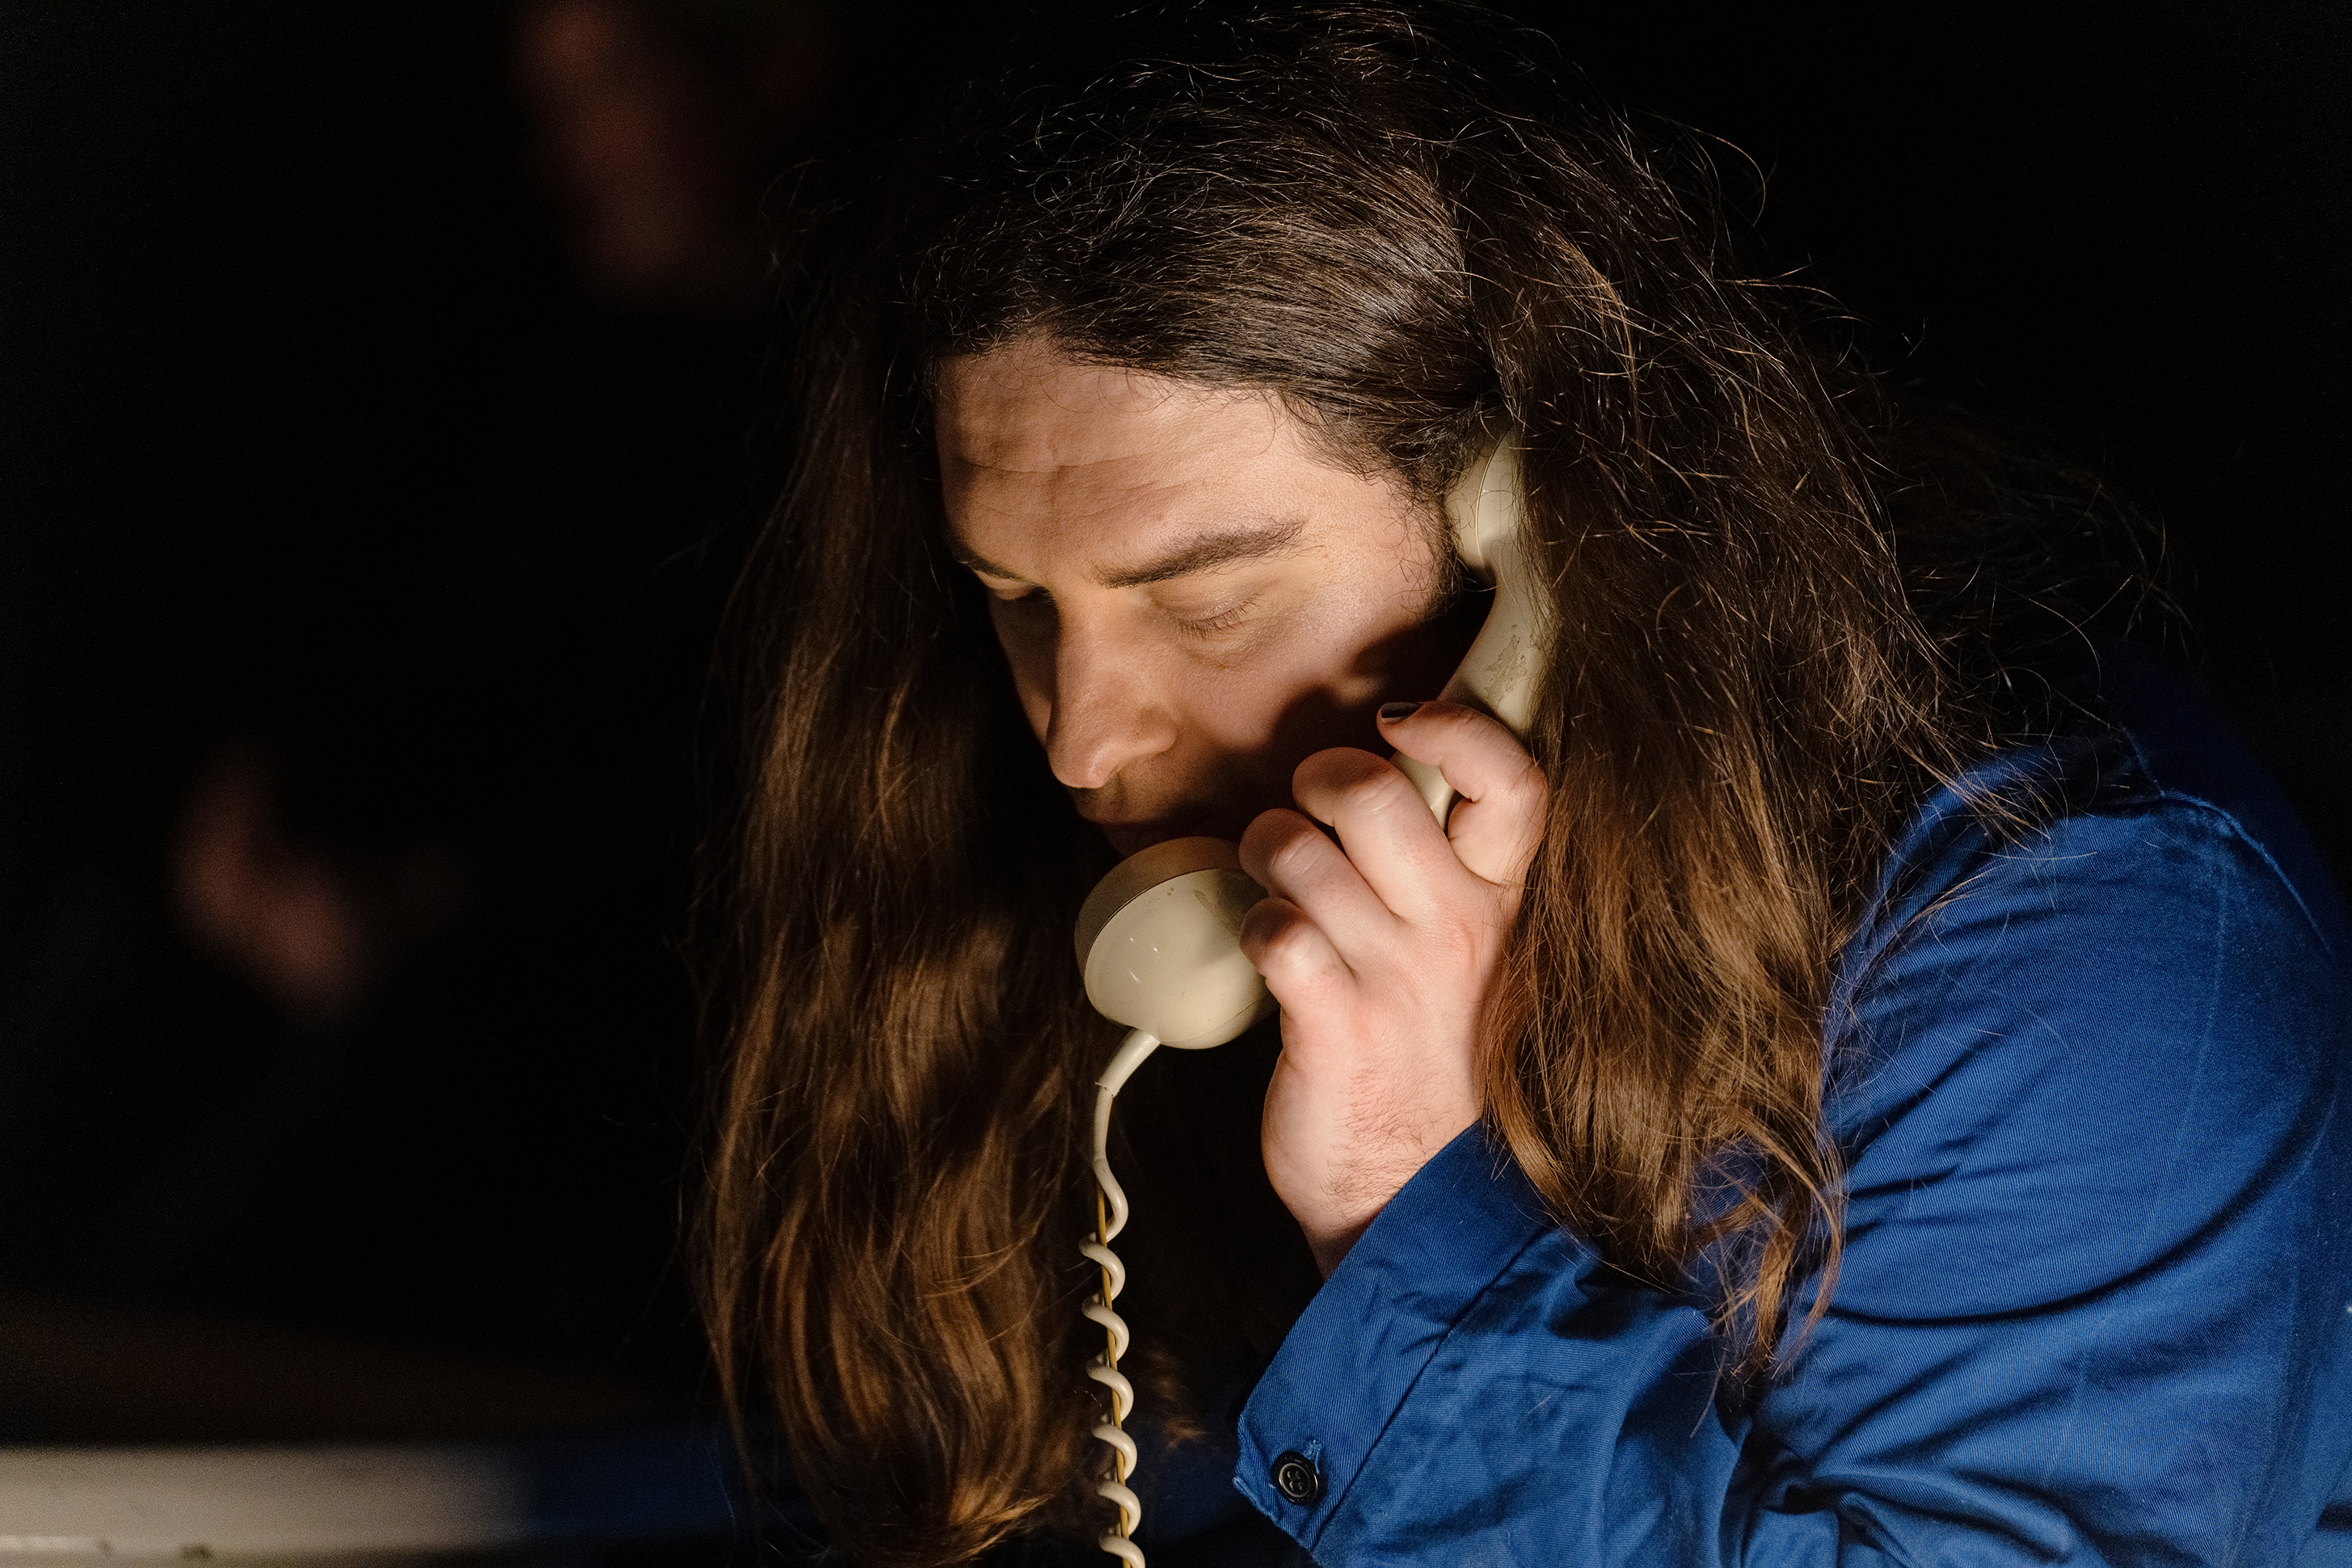 Auf dem Bild ist der Kopf einer weißen Person mit langen dunkel braunen Haaren zu sehen. Sie trägt einen Blauen Overall und hat einen beigen Telefonhörer in der linken Hand. Der Hintergrund ist dunkel.